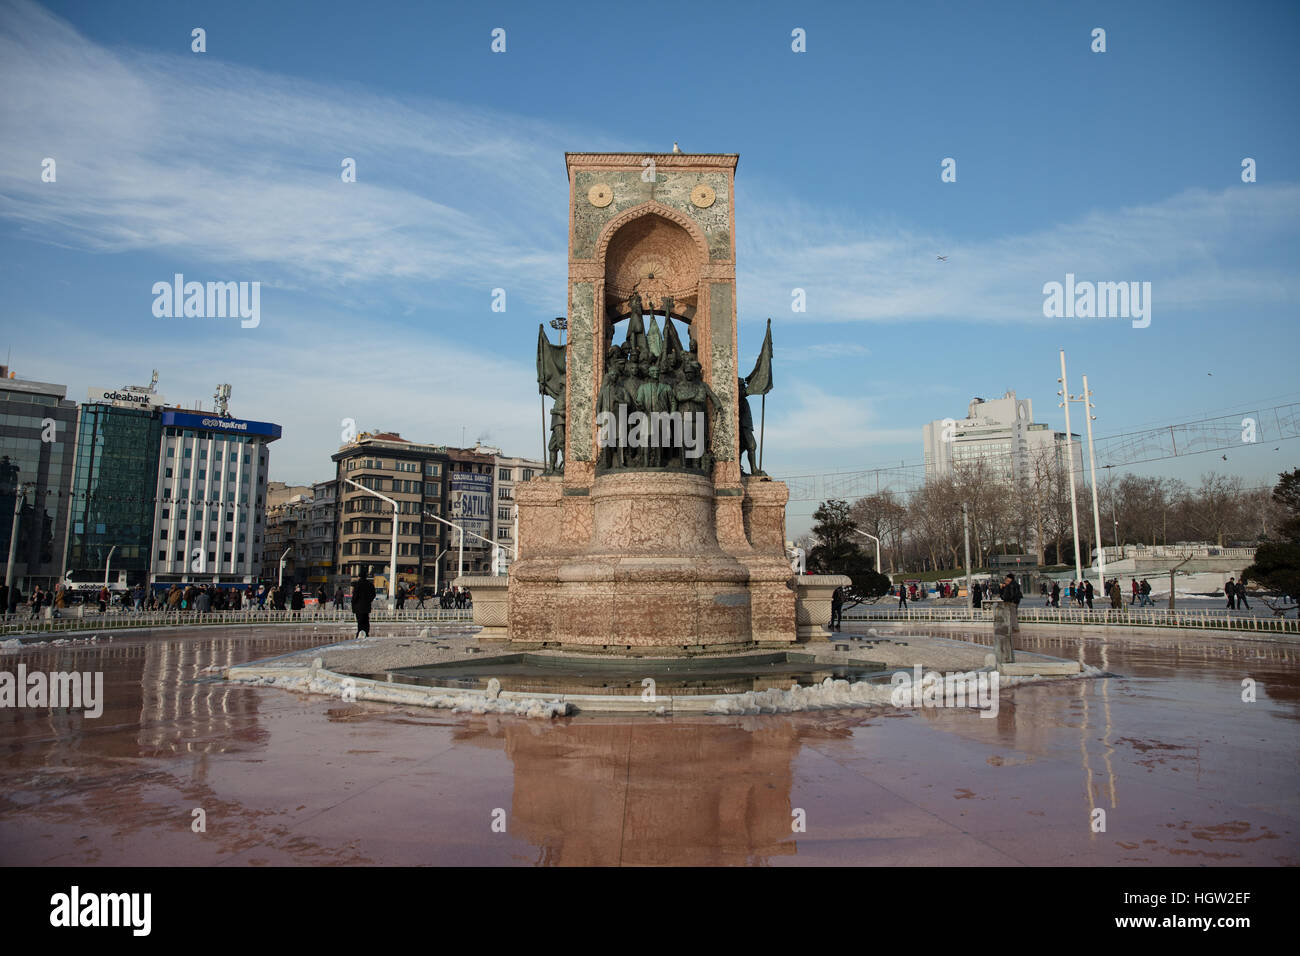 La Repubblica un monumento in Piazza Taksim, Istanbul, che commemora la formazione della repubblica turca nel 1923. Foto Stock